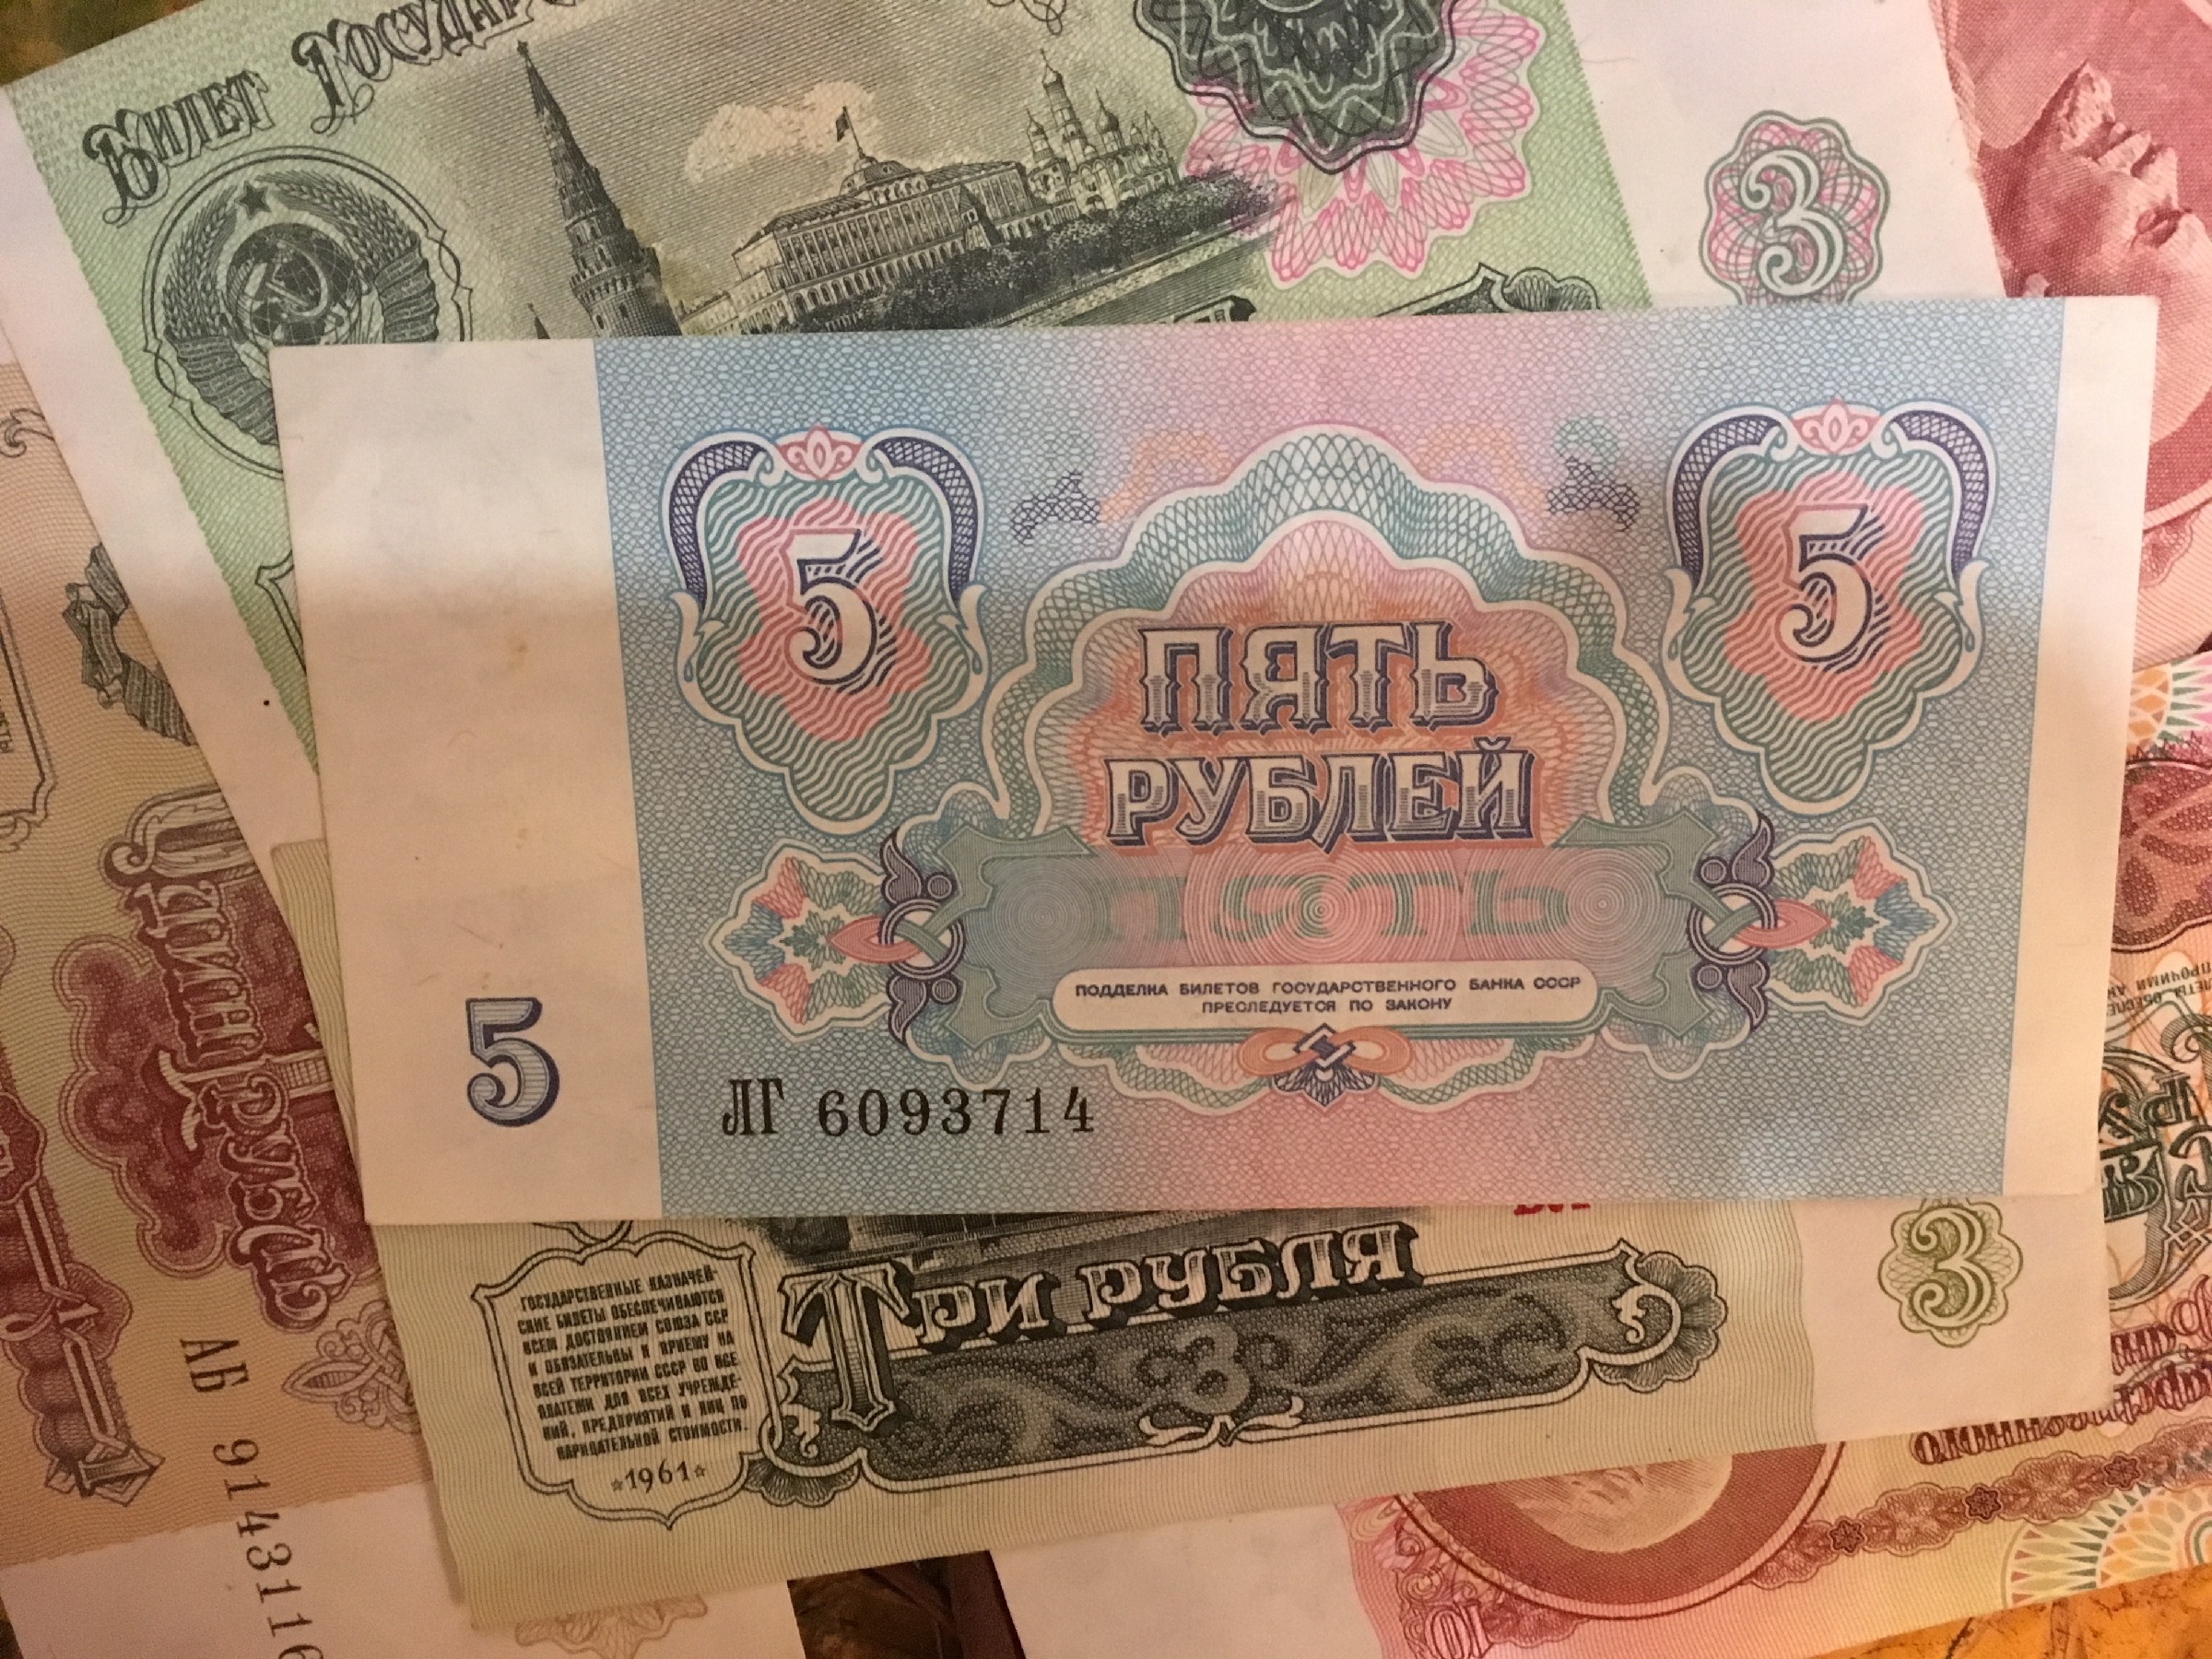 Бумажный вариант 5 рублей появился только в 1991 году...